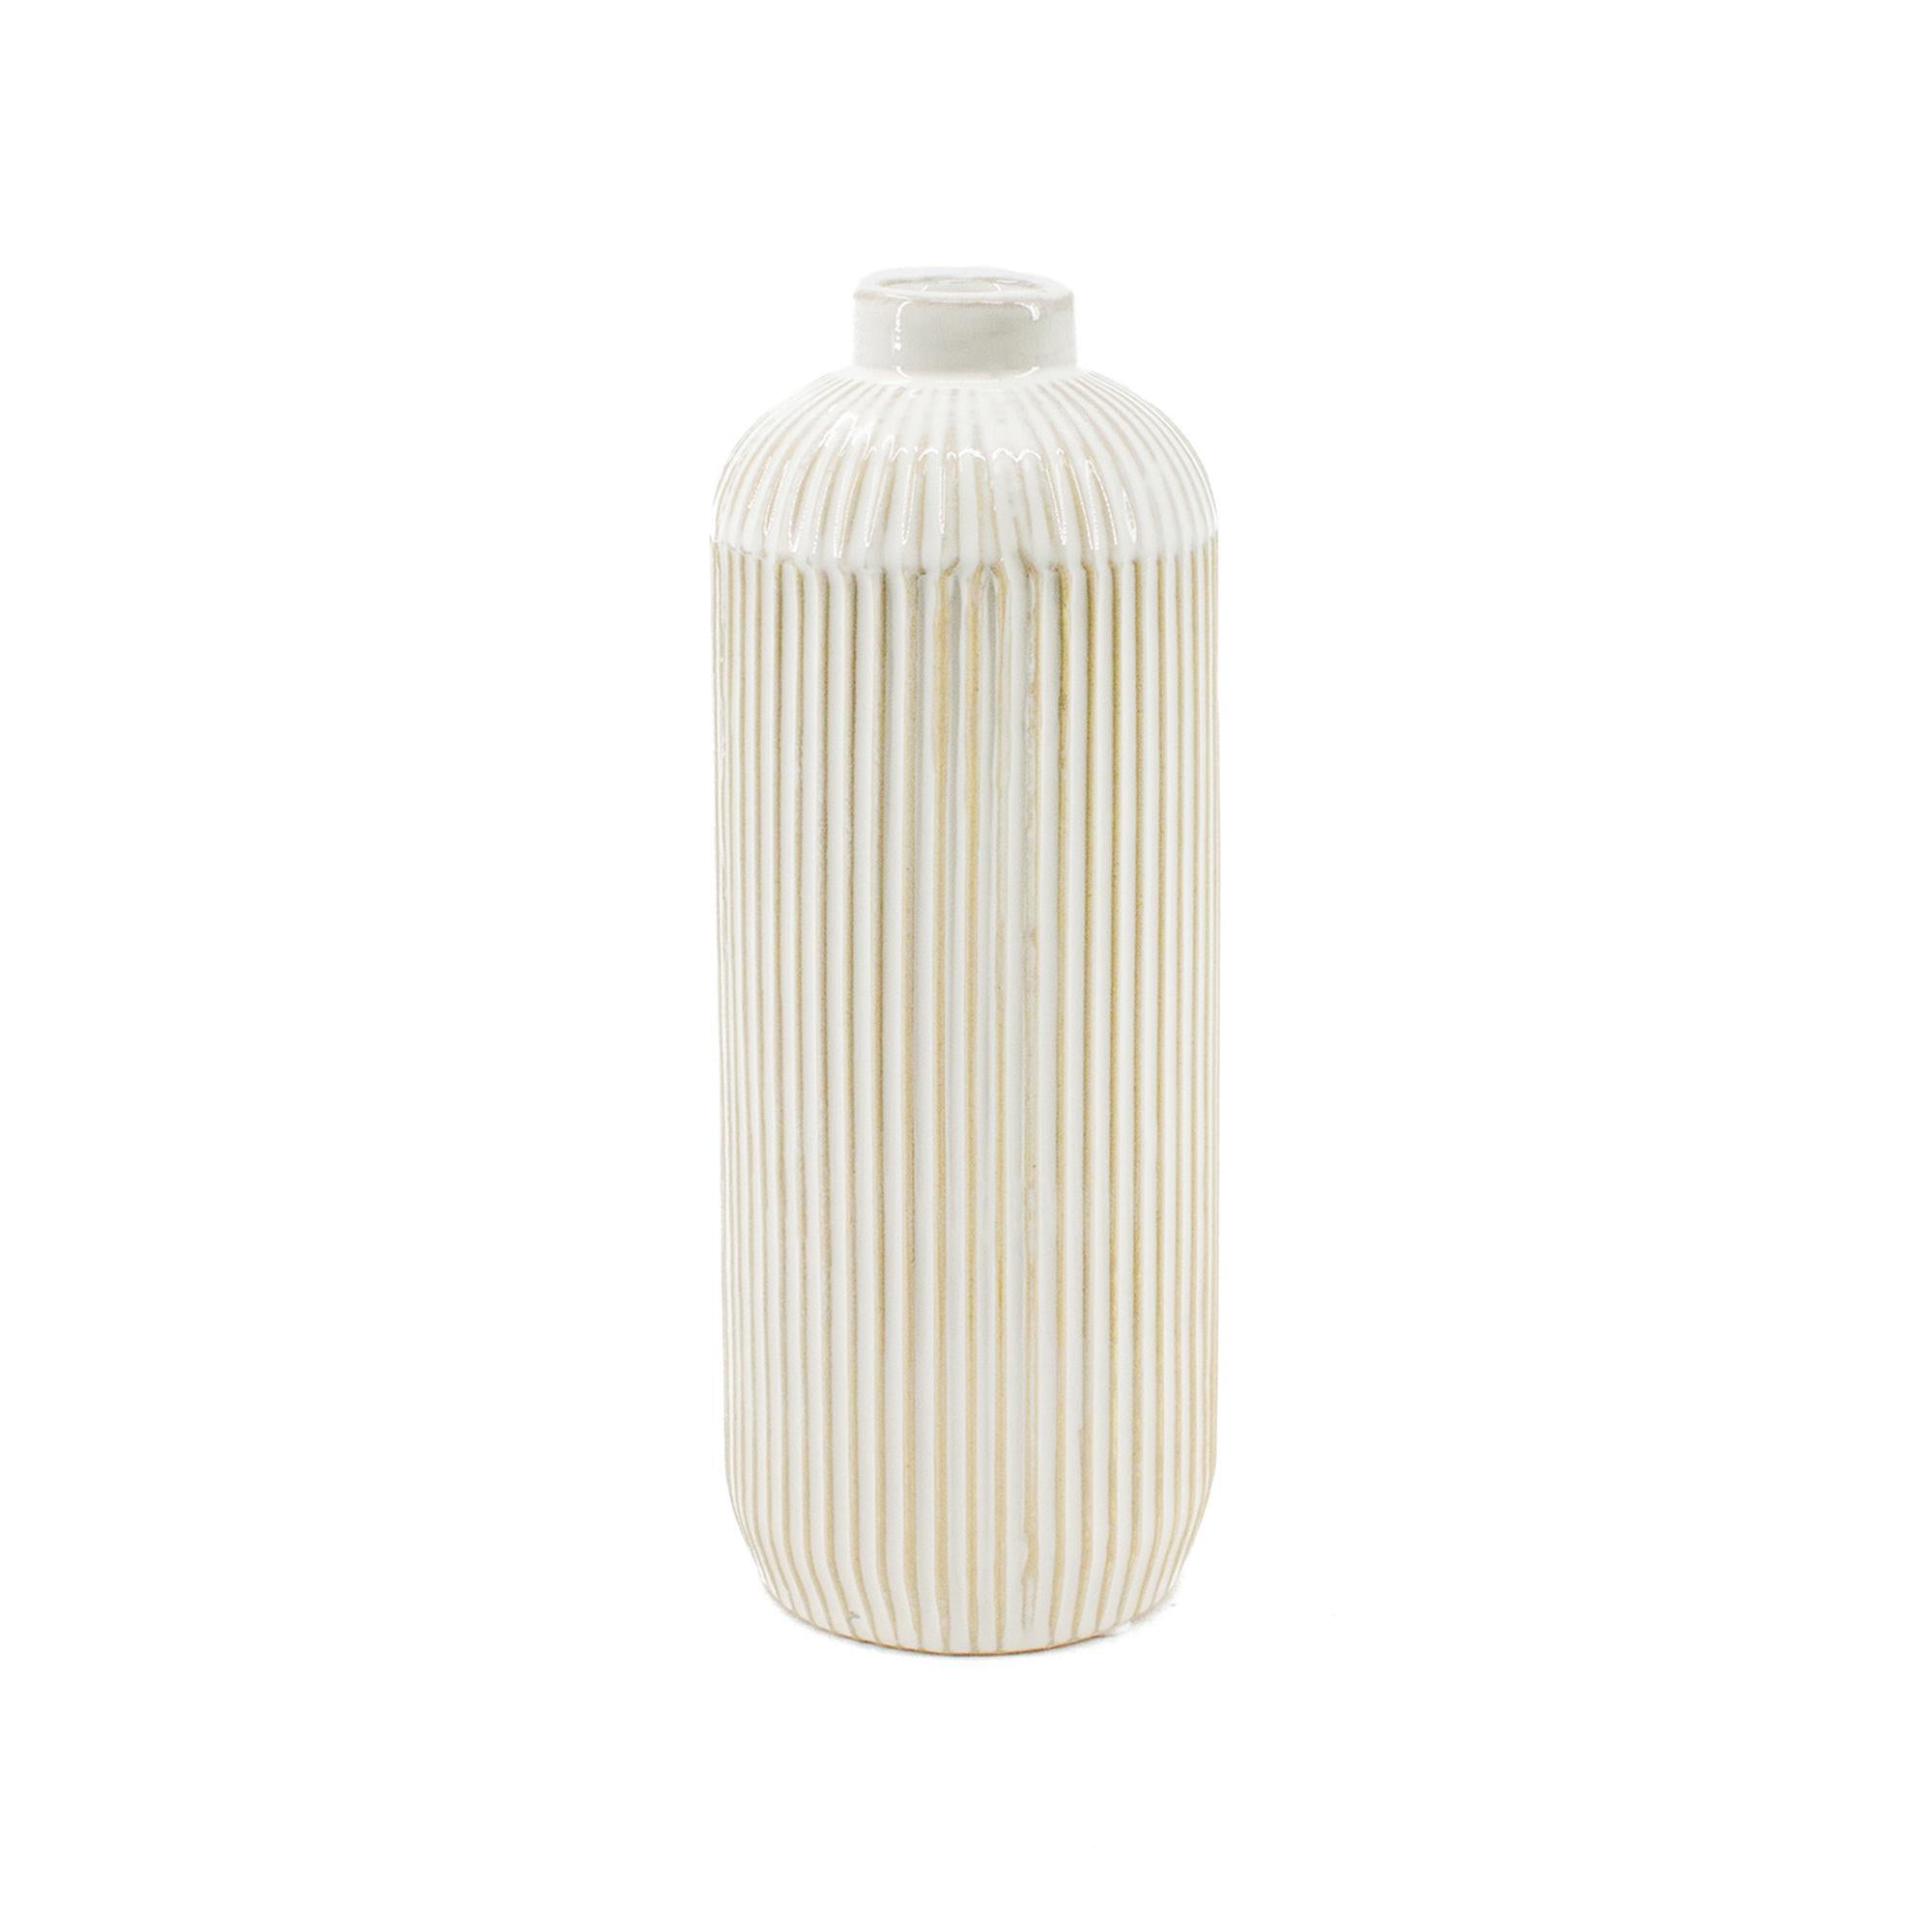 White Line Engraved Ceramic Vase - 9"H